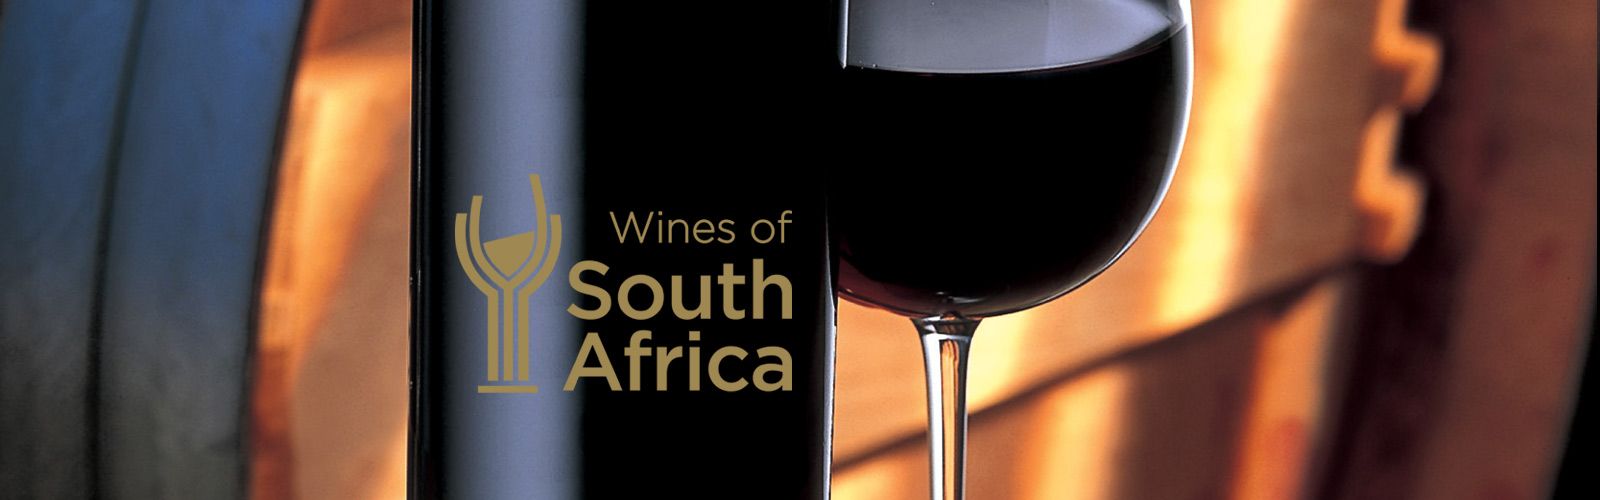 南非葡萄酒拍卖会成交价再立异高